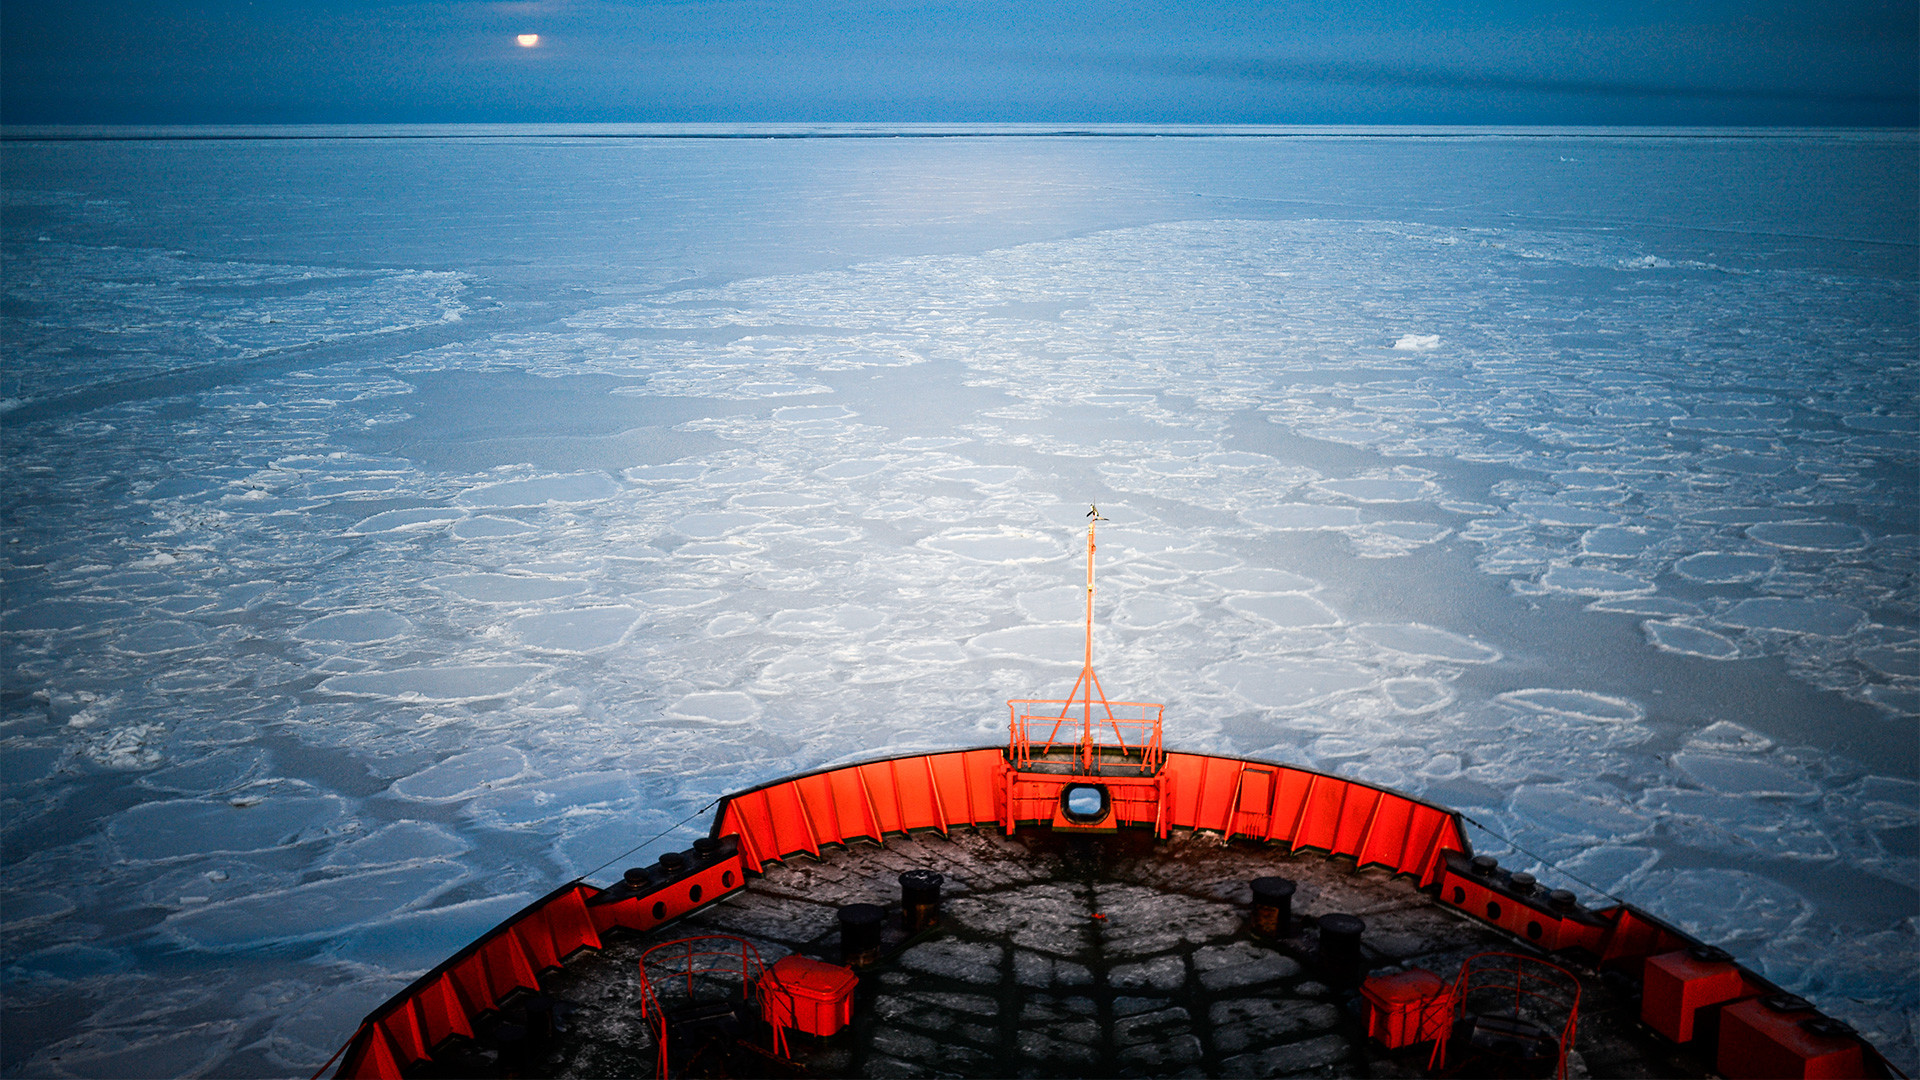 Атомният ледоразбивач "Арктика" отплава в ледените арктически води, 18.10.2013 г.